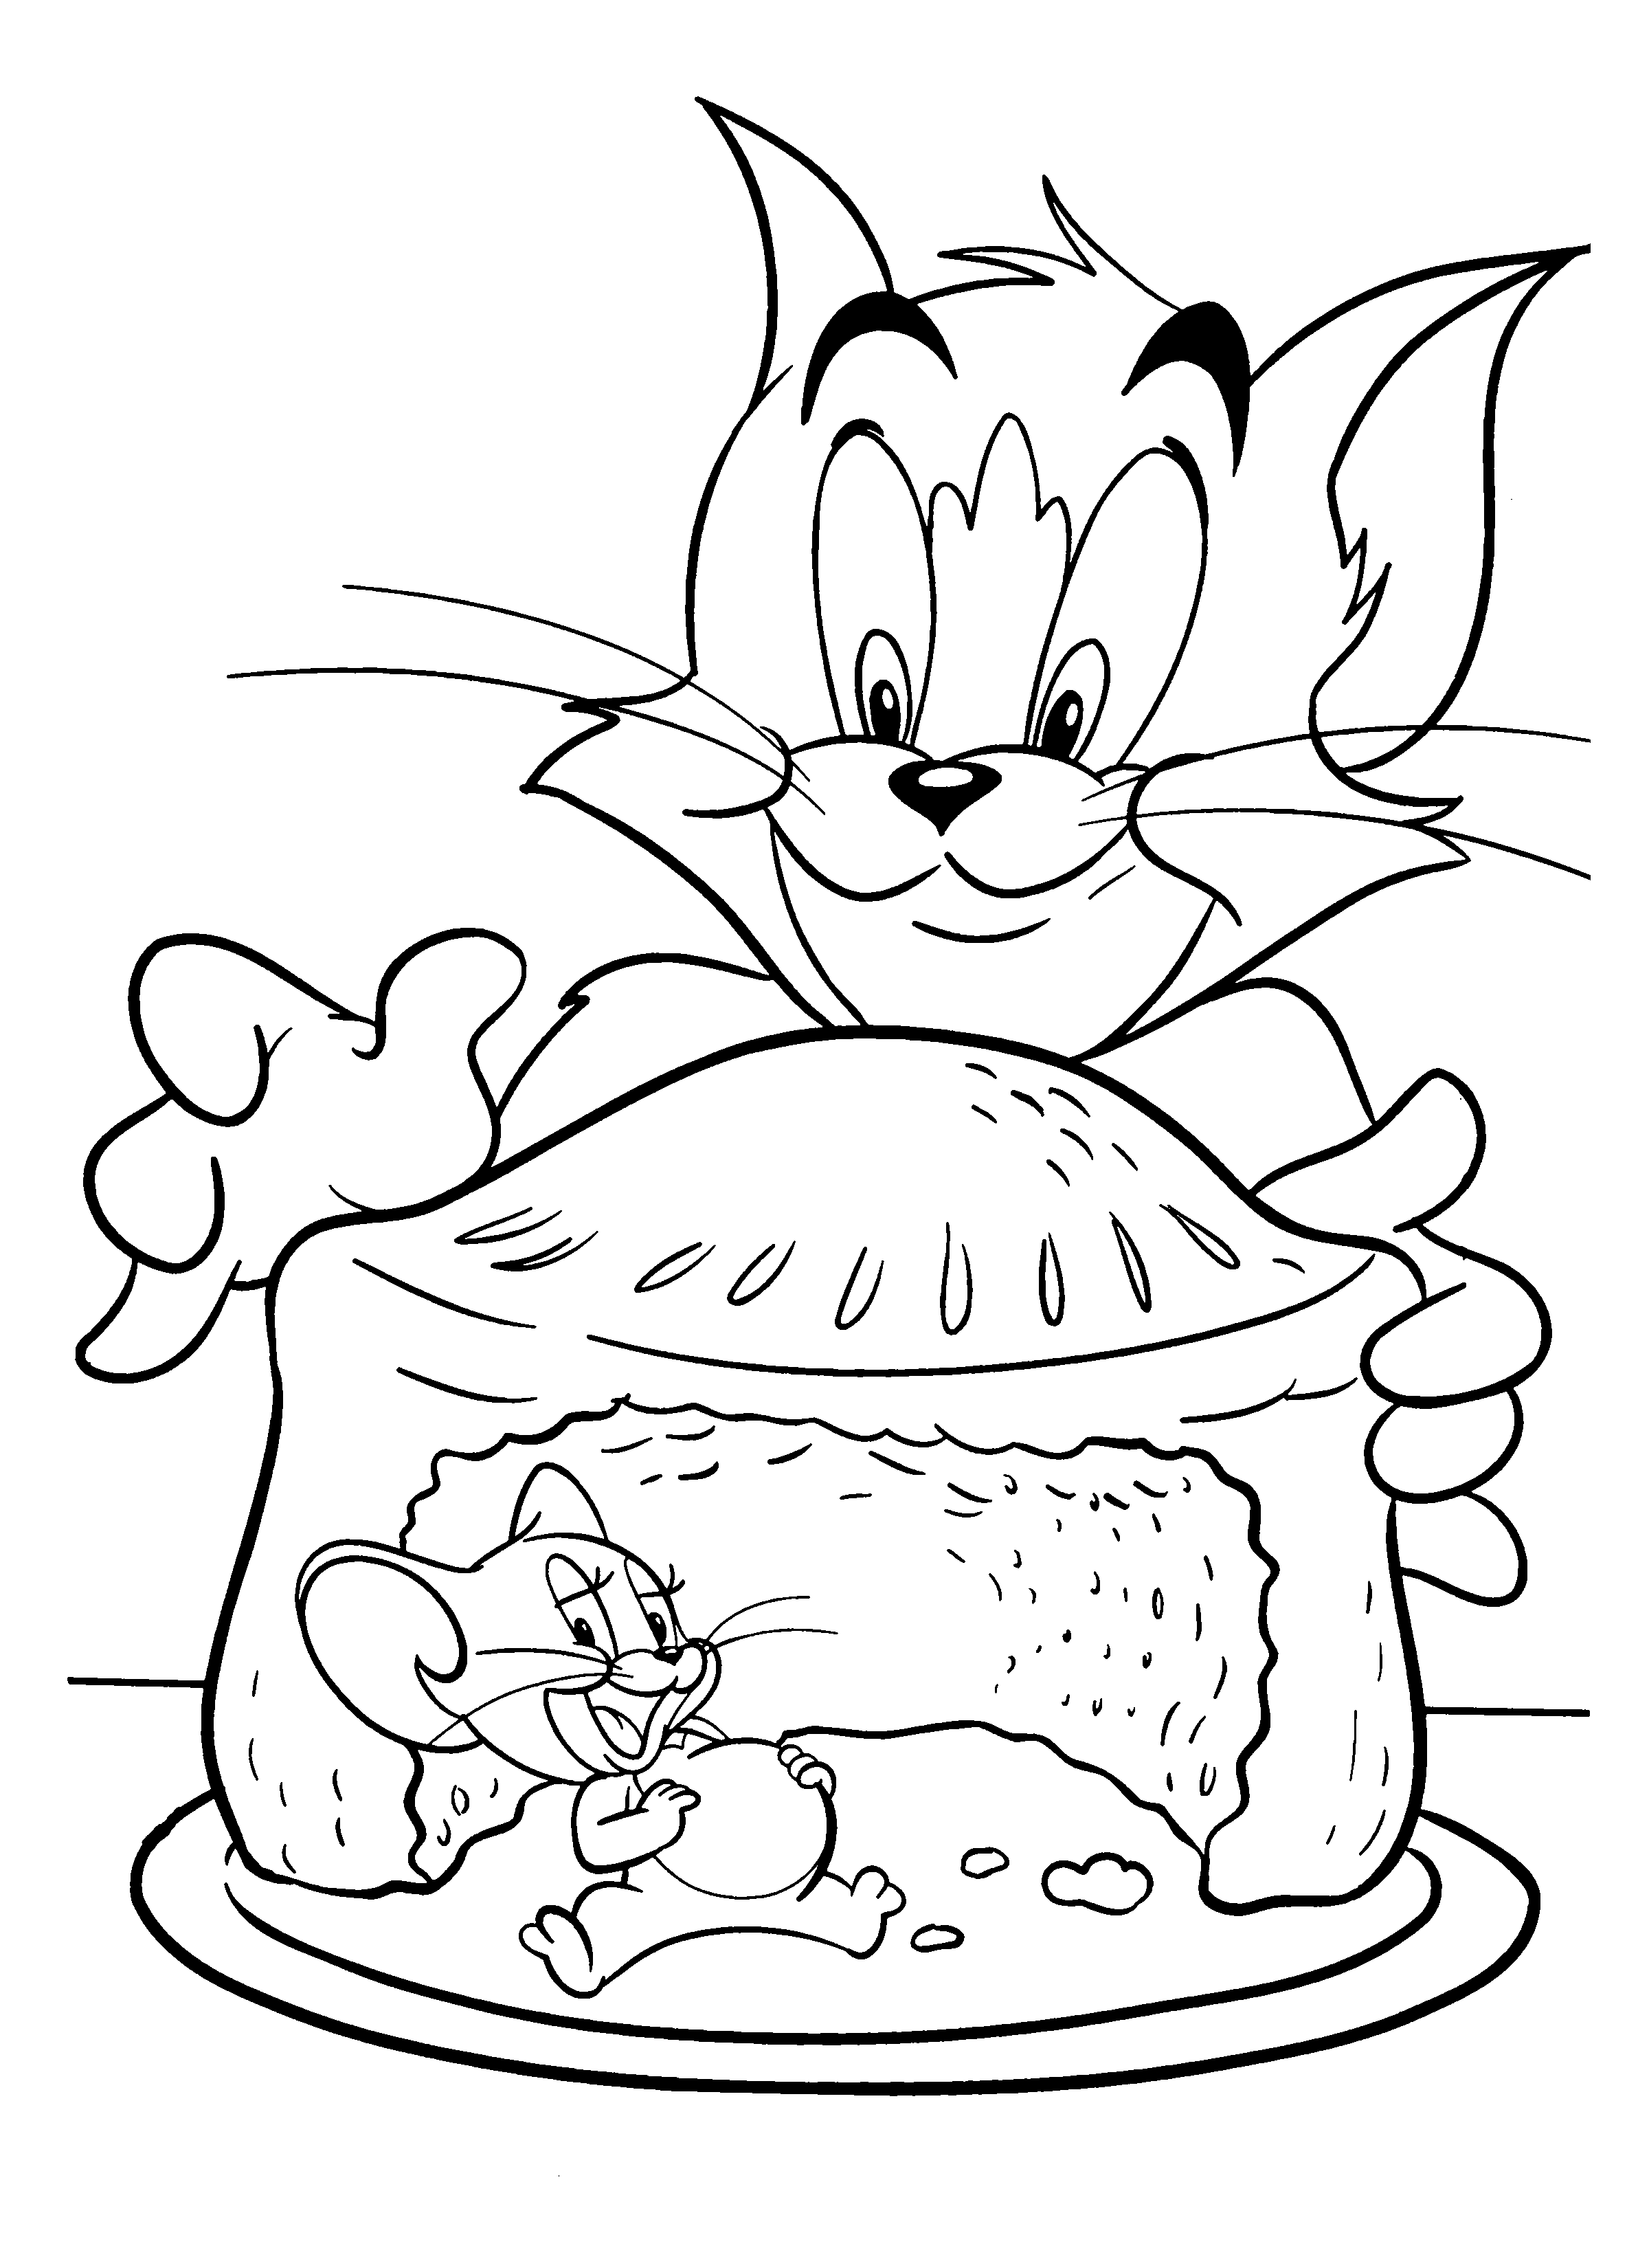 ¡Qué rico! La delicia de Tom y Jerry